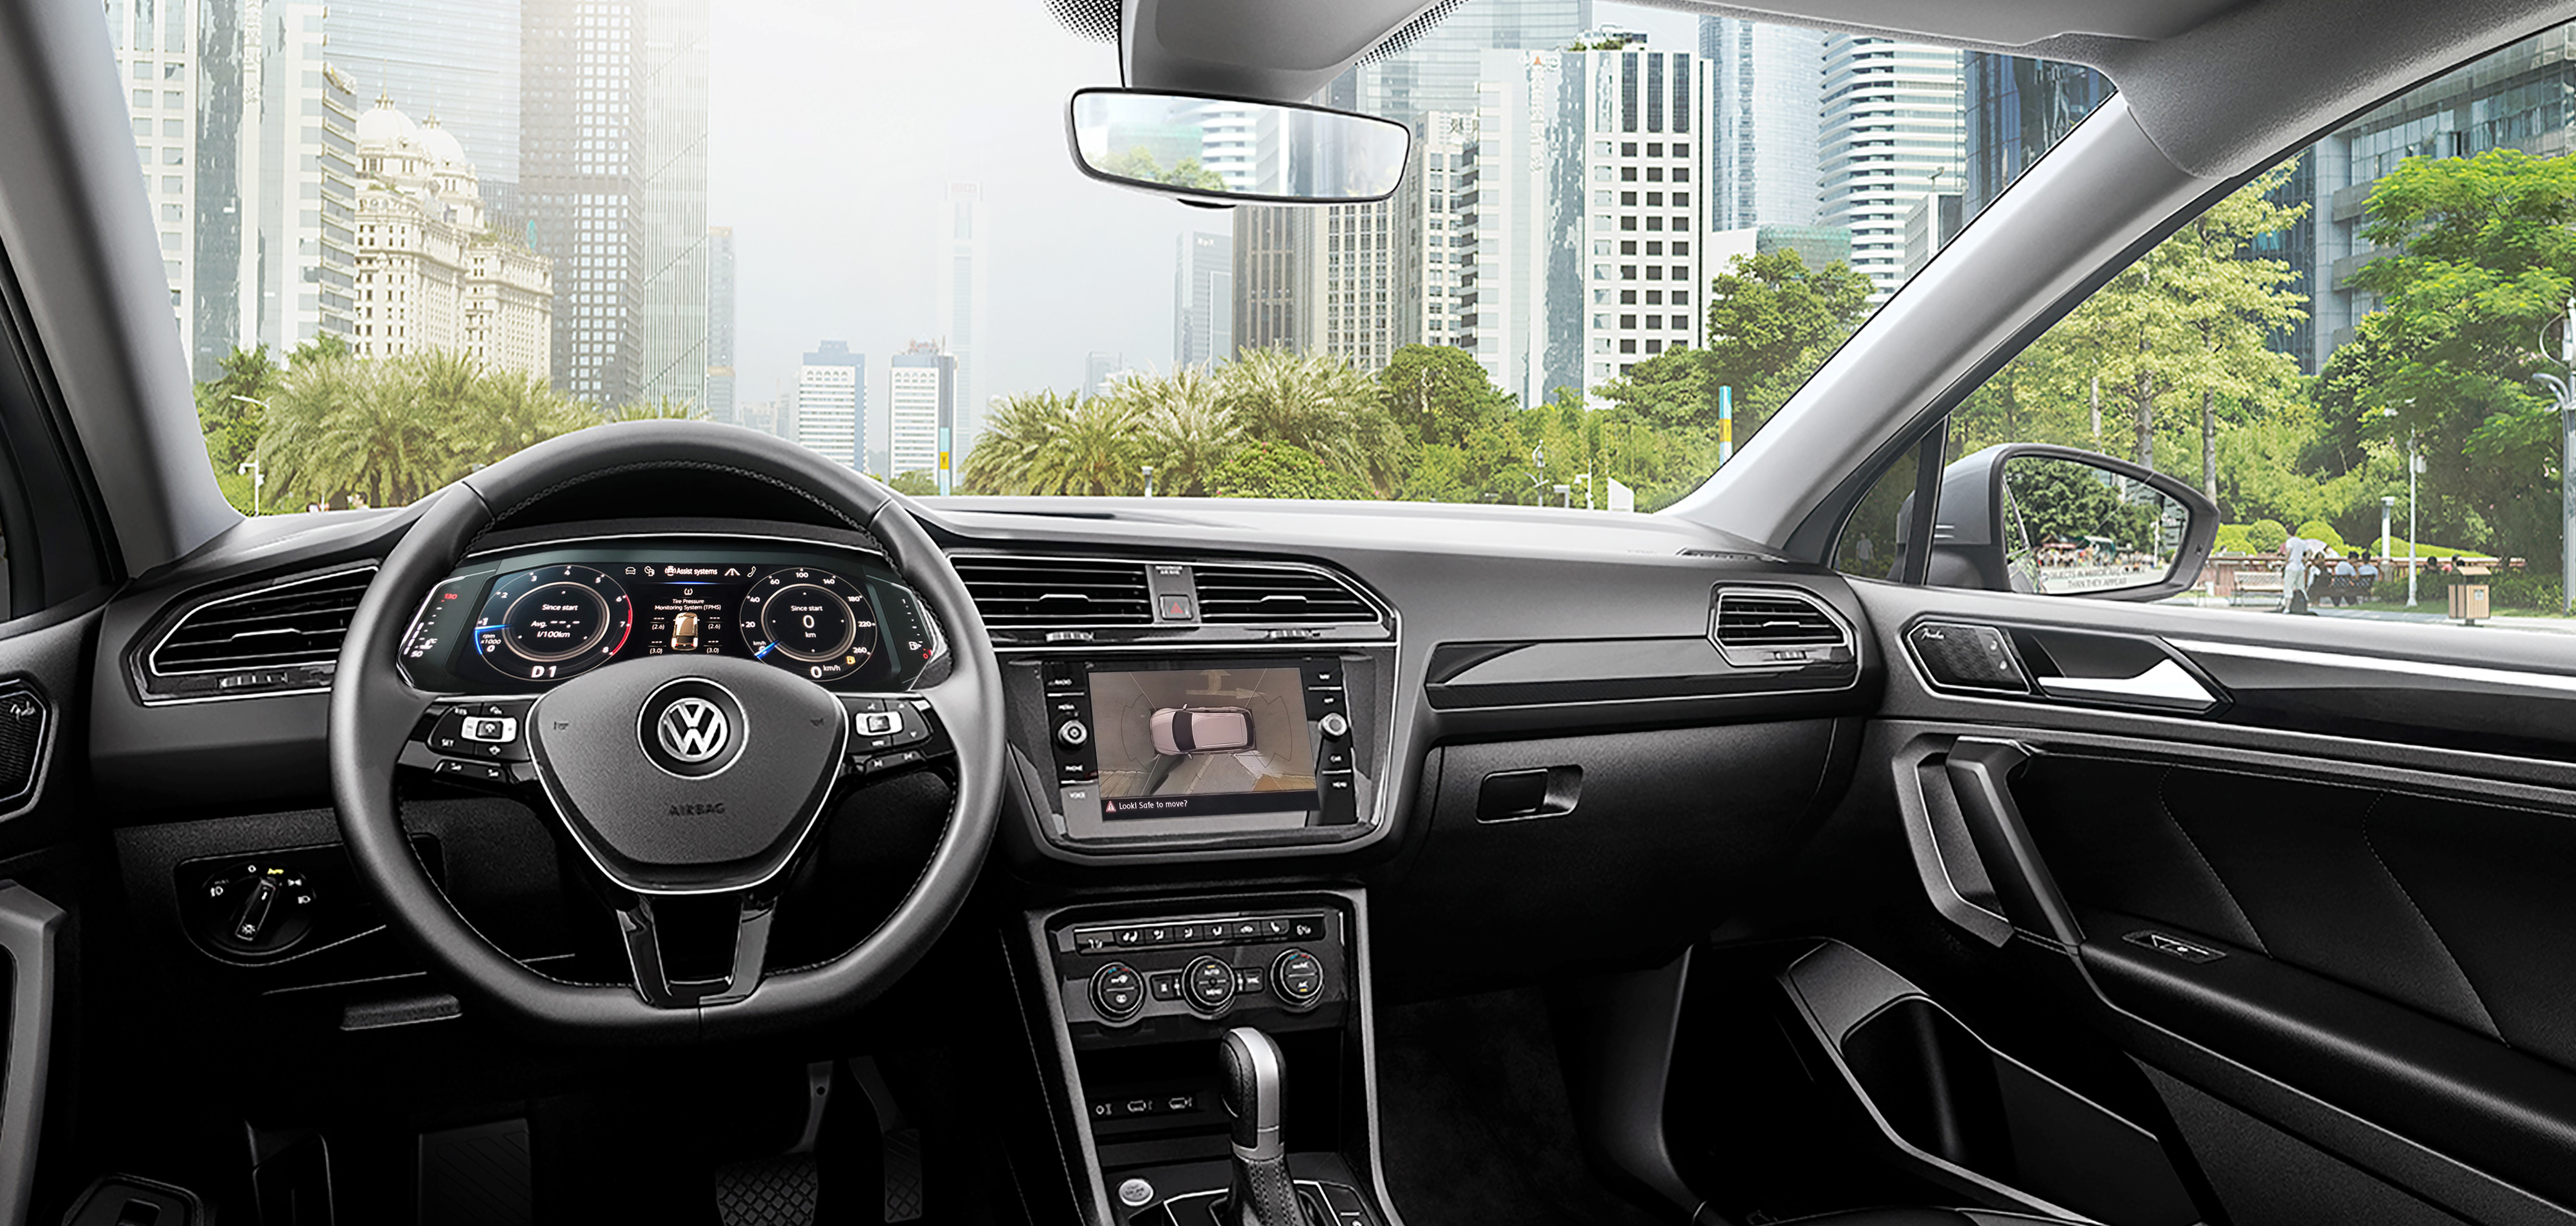 Màn hình hiển thị area view 360o hiển thị 3D giúp lái xe nhận biết được toàn cảnh xung quanh một cách dễ dàng. 